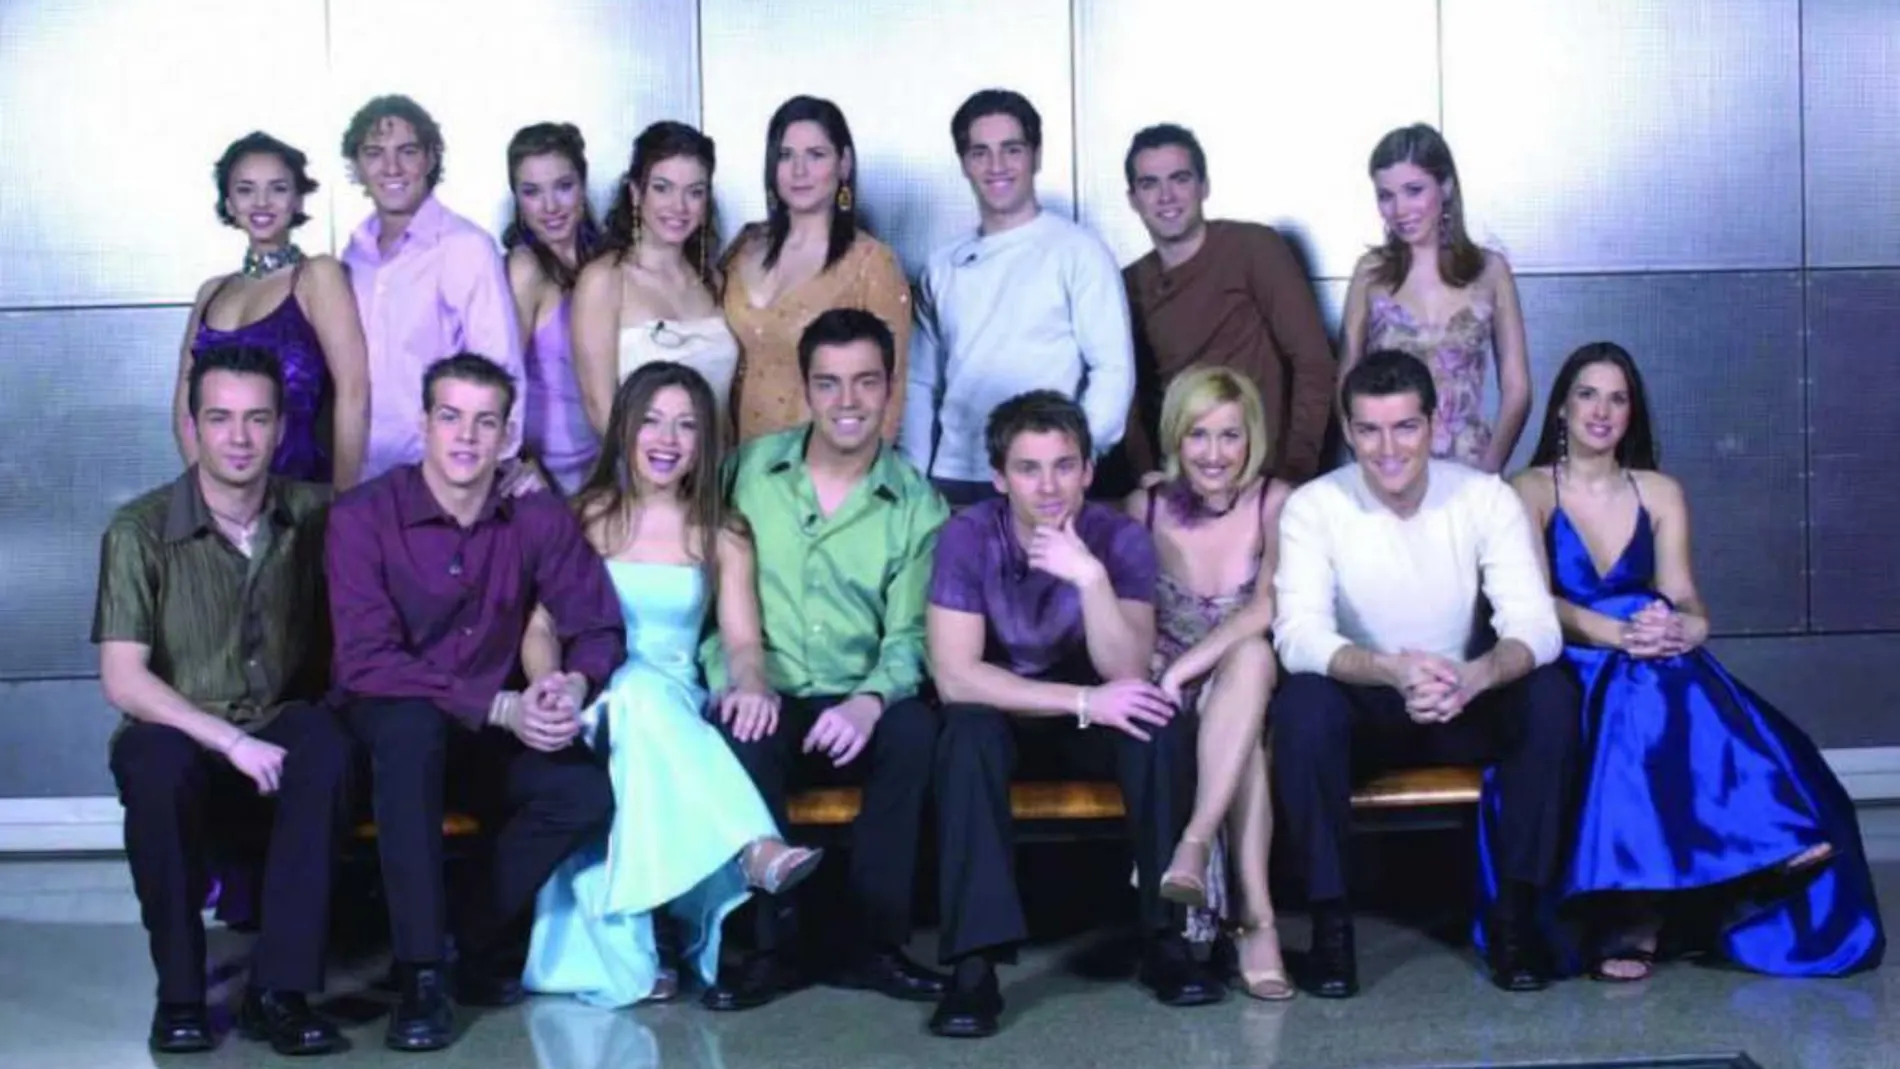 Juan Camus, en el centro de la imagen con camisa verde, y Verónica, sentada a su lado con un vestido azul, son los únicos participantes que no han confirmado su presencia en el concierto